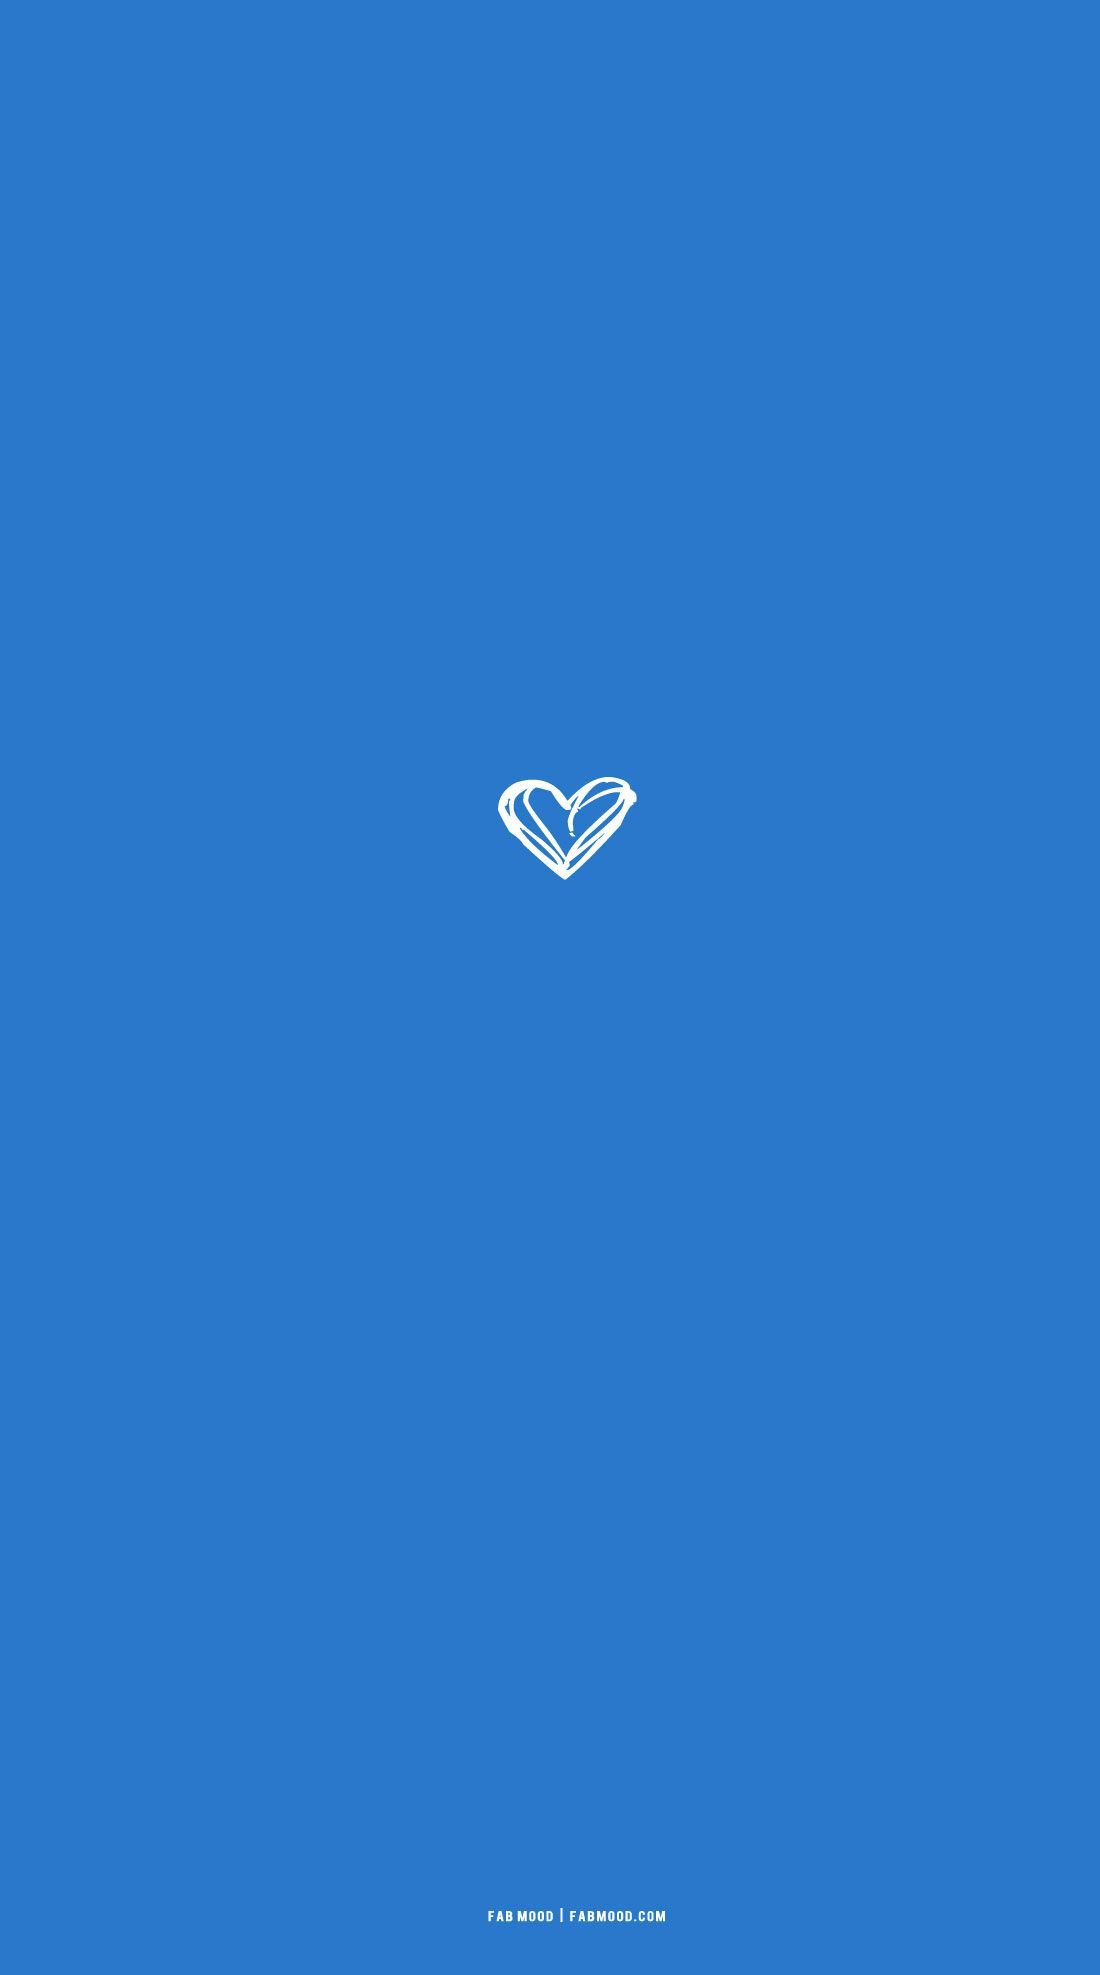 Azure Blue Wallpaper For Phone : Messy Heart Illustration